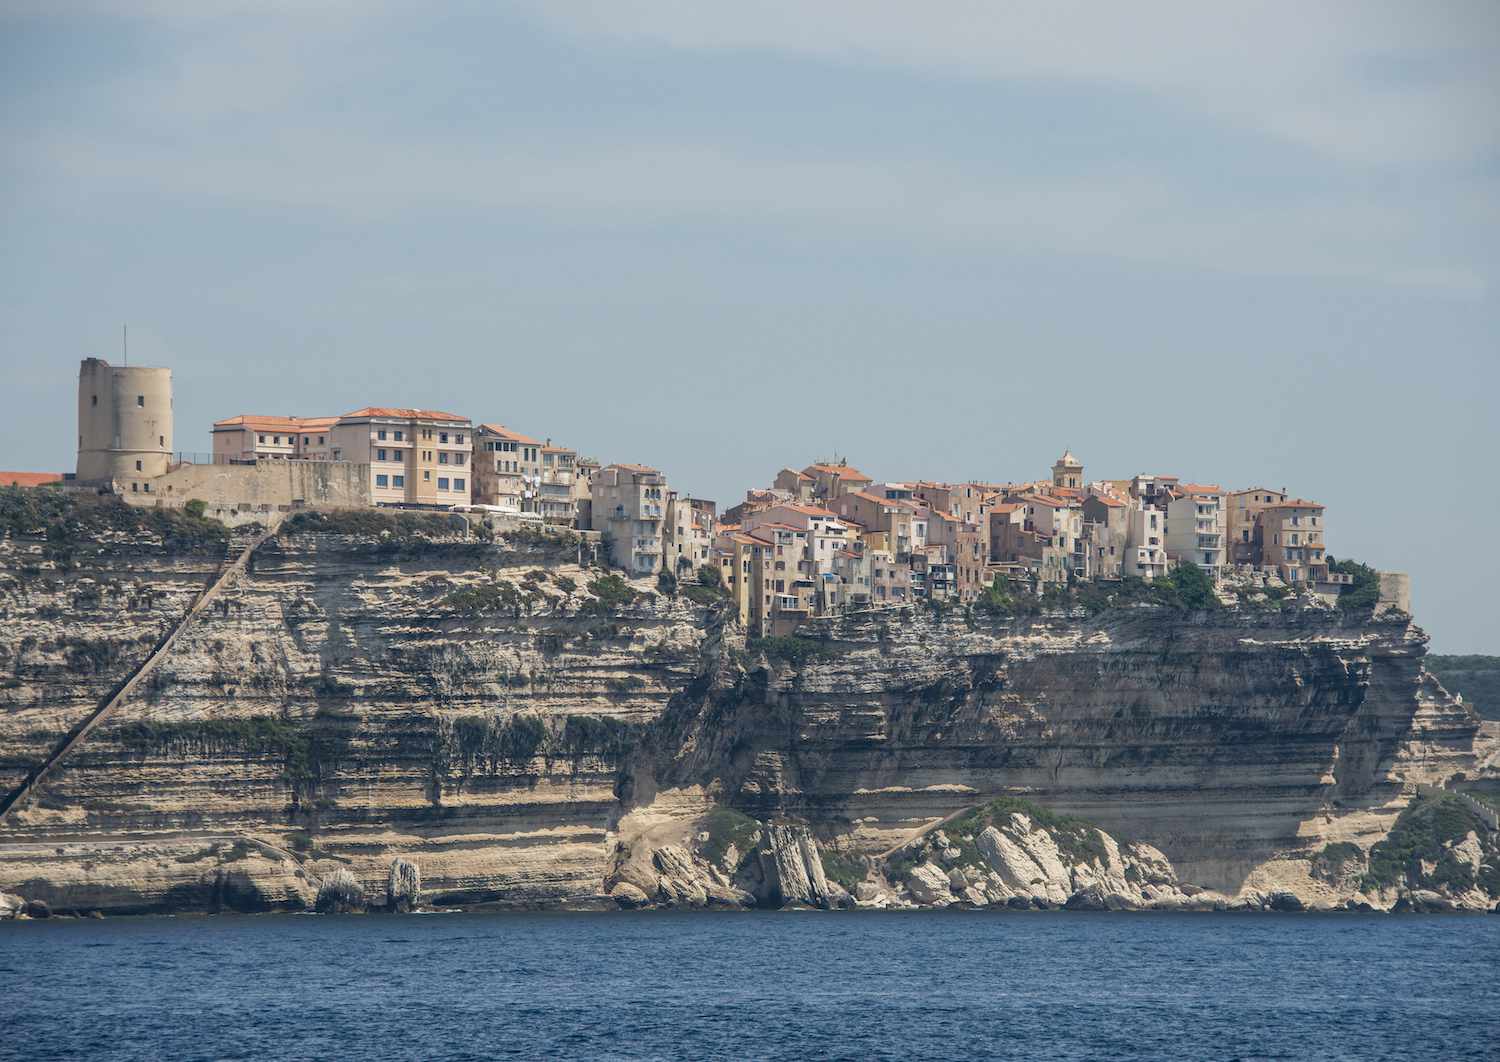 La antigua ciudad de Bonifacio se asienta en los acantilados sobre el agua